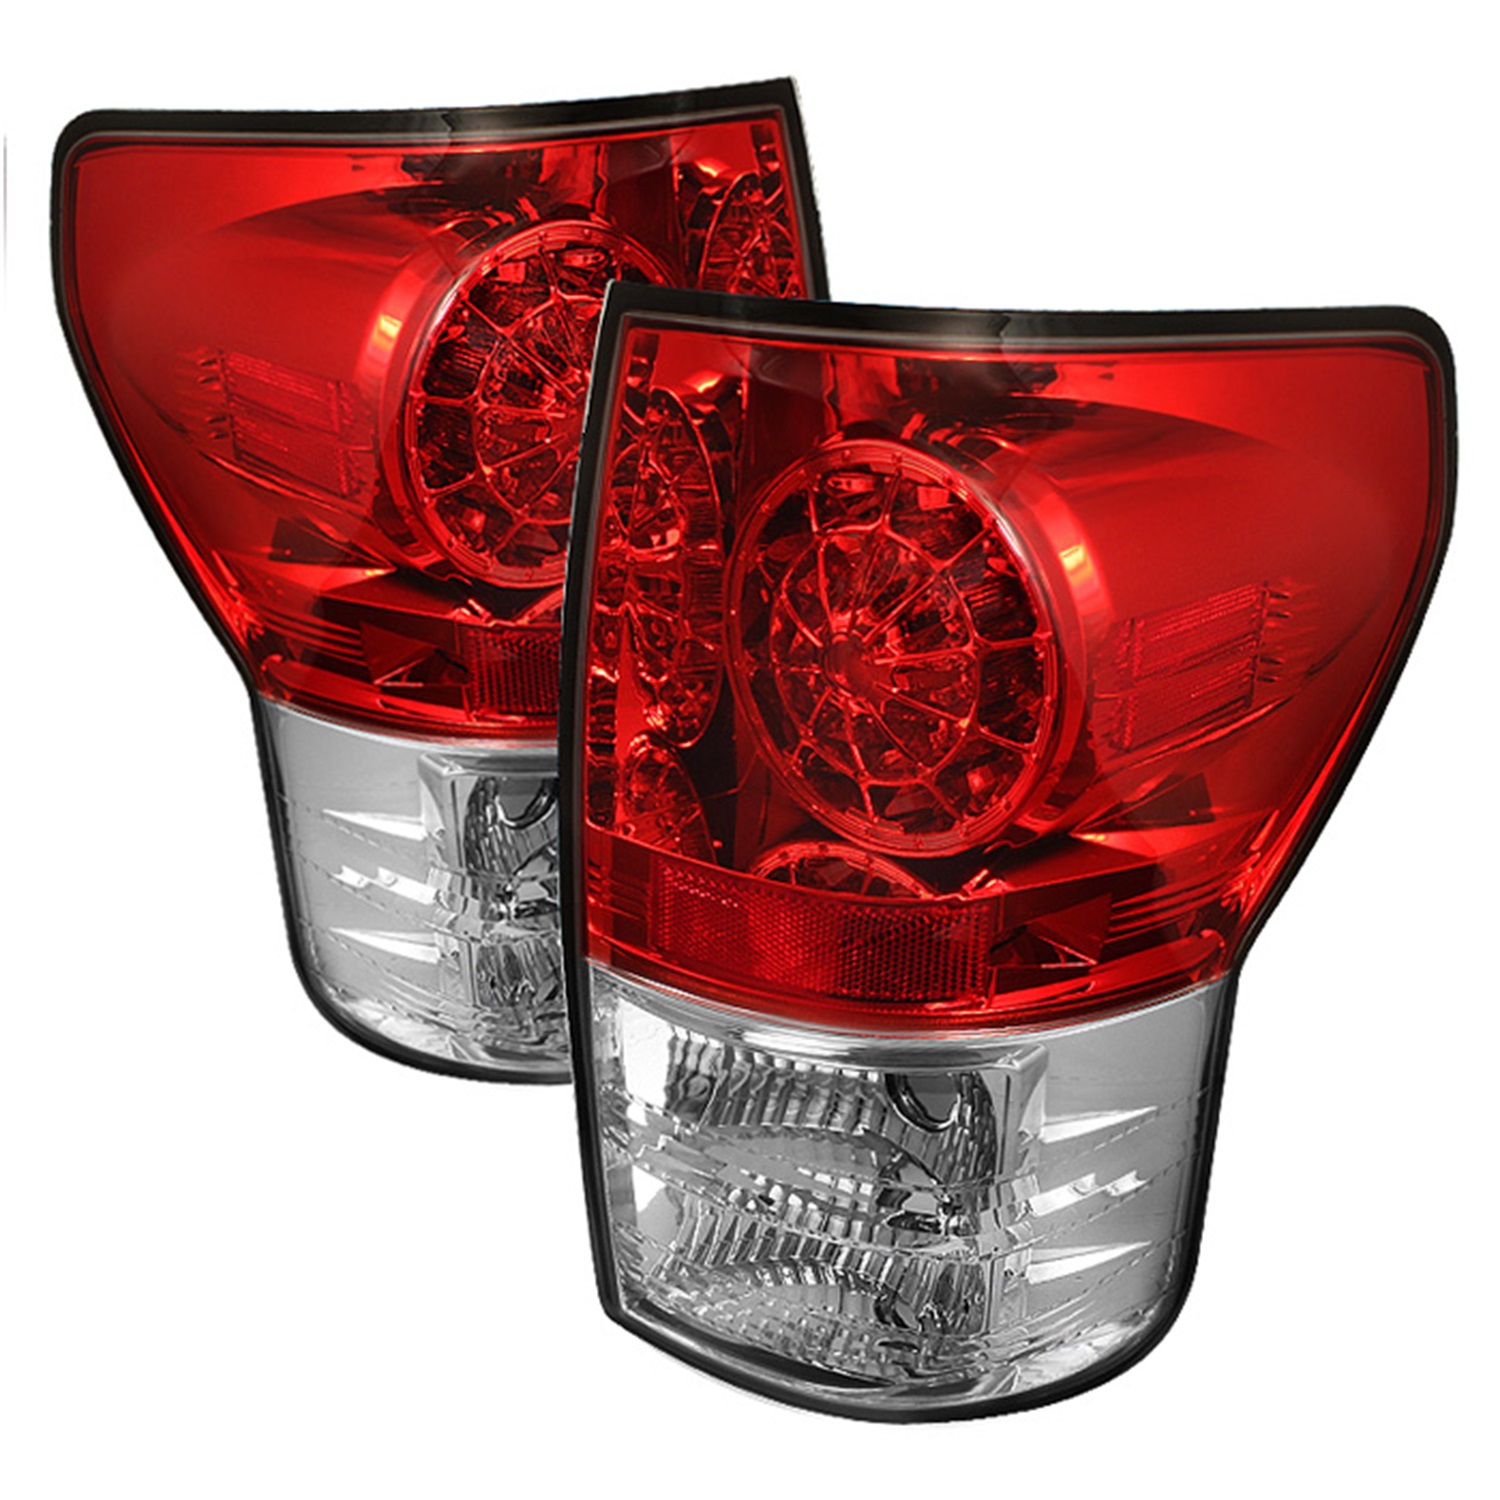 Spyder Auto Spyder Auto 5029607 LED Tail Lights Fits 07-13 Tundra